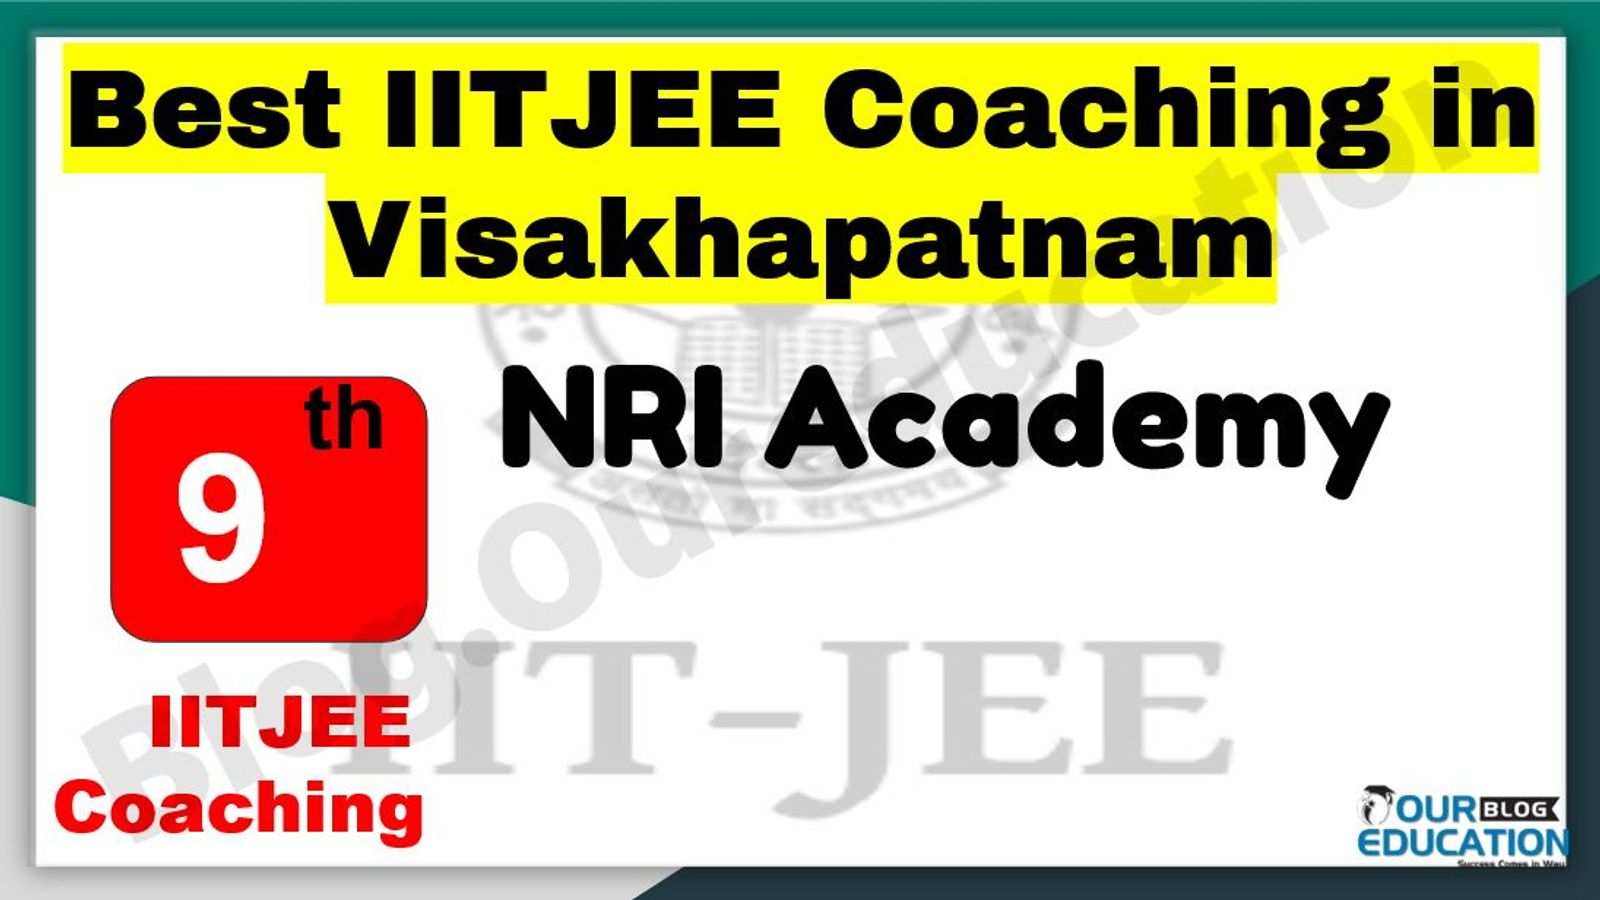 Best IITJEE Coaching in Visakhapatnam